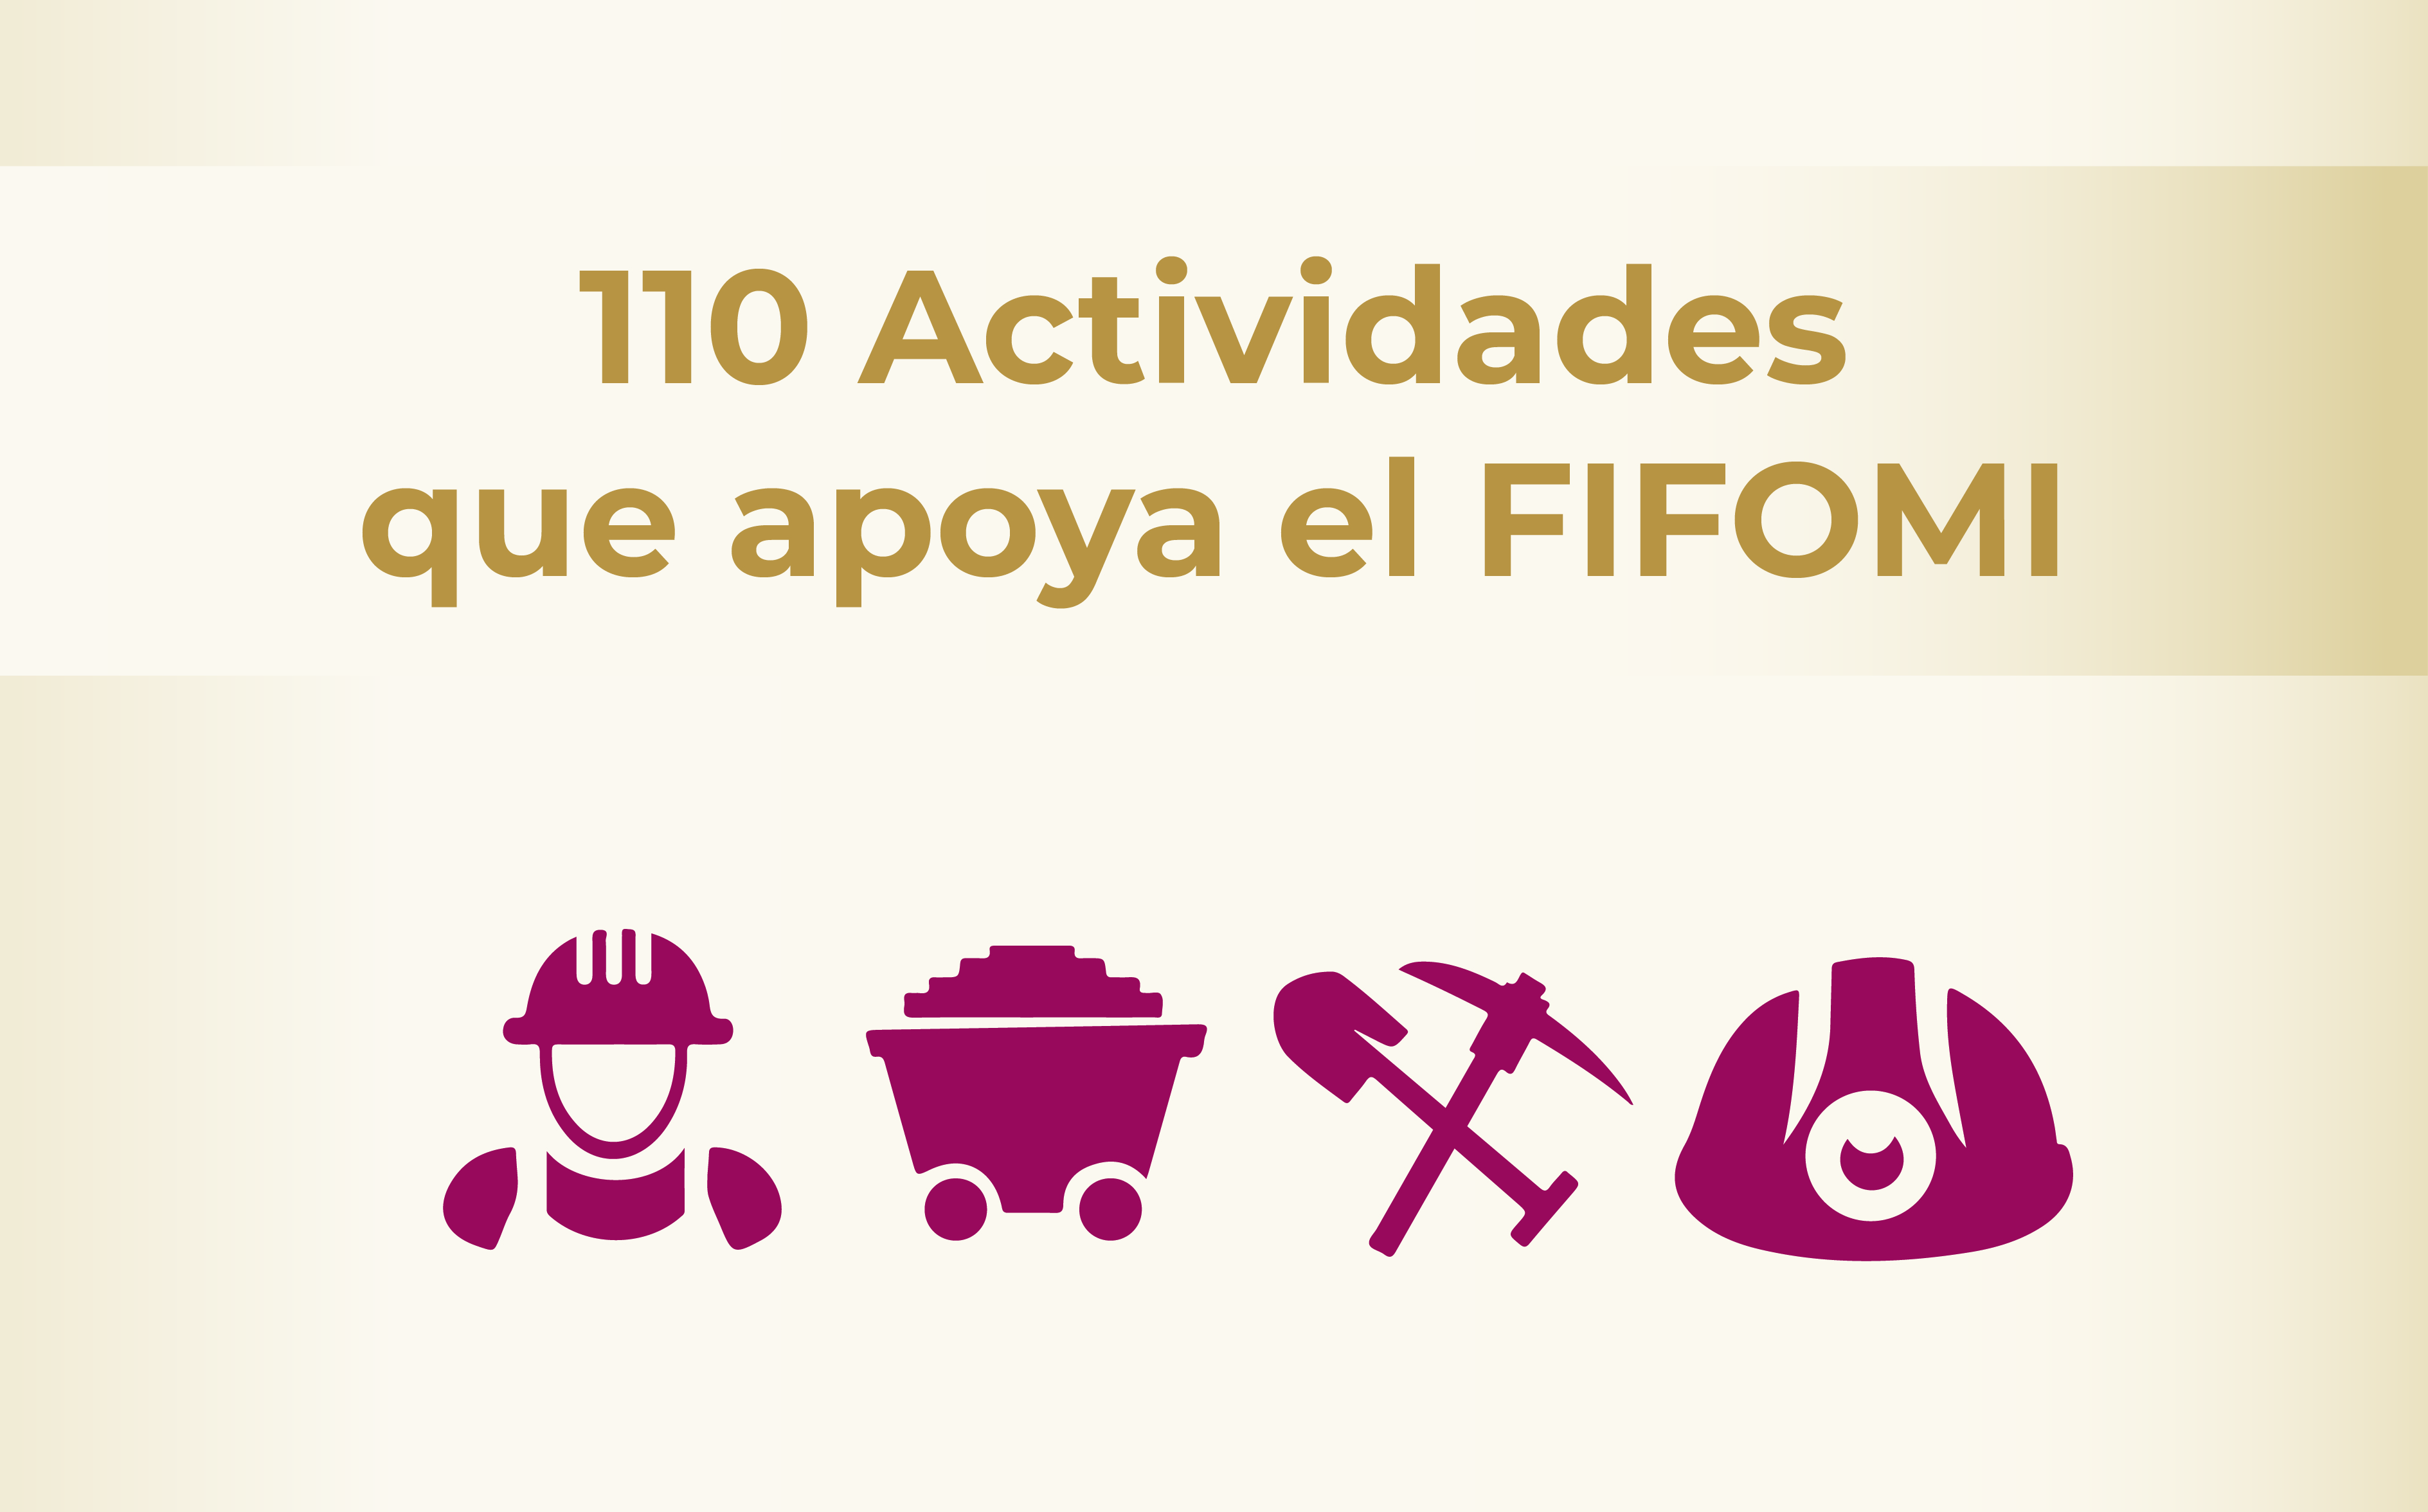 Actividades que apoya el FIFOMI